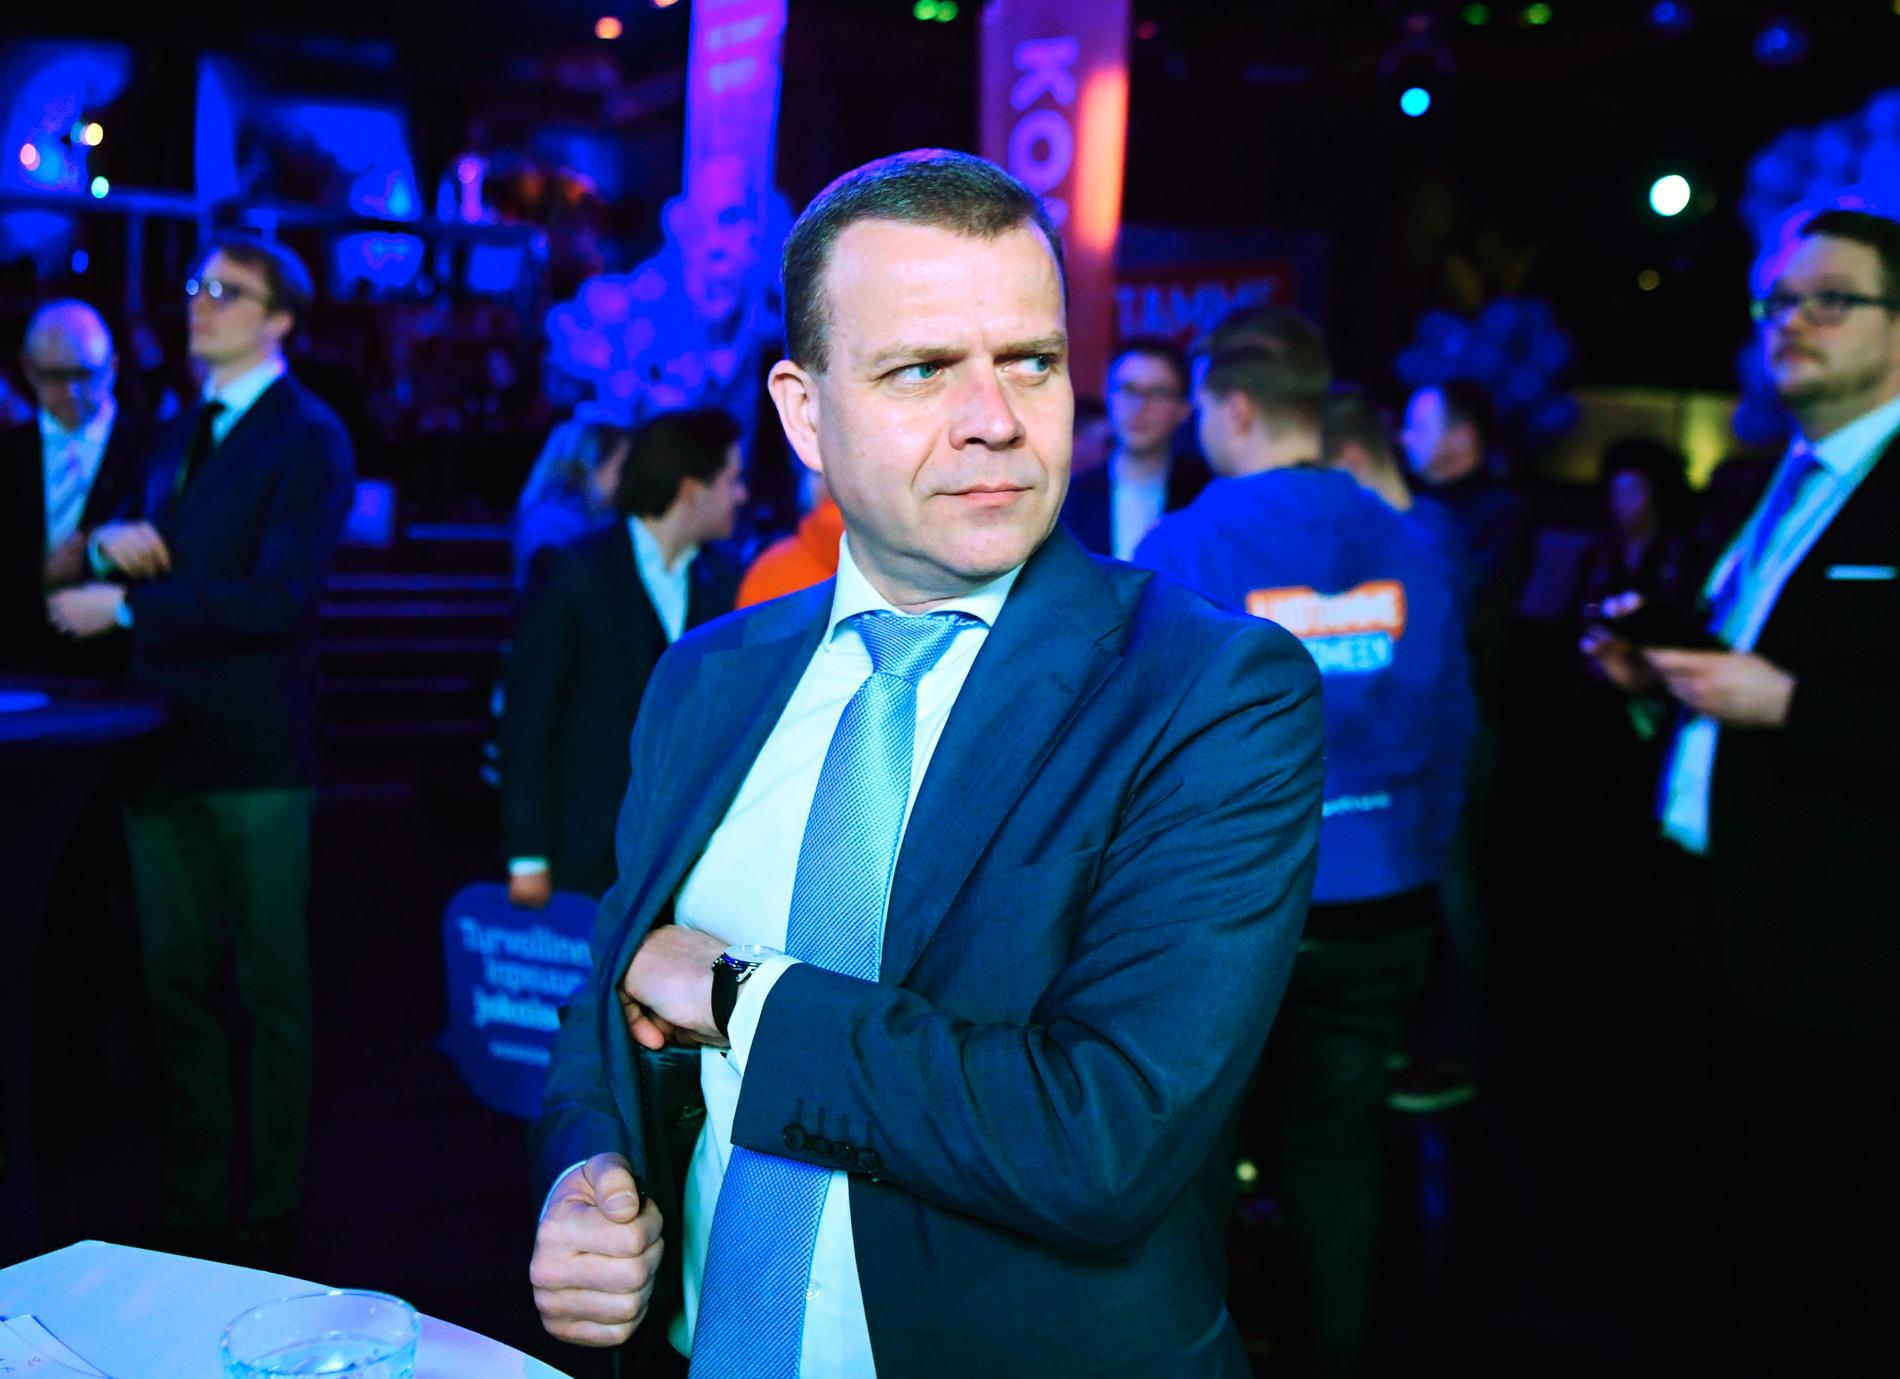 Antti Petteri Orpo är ledare för Samlingspartiet. Arkivbild.